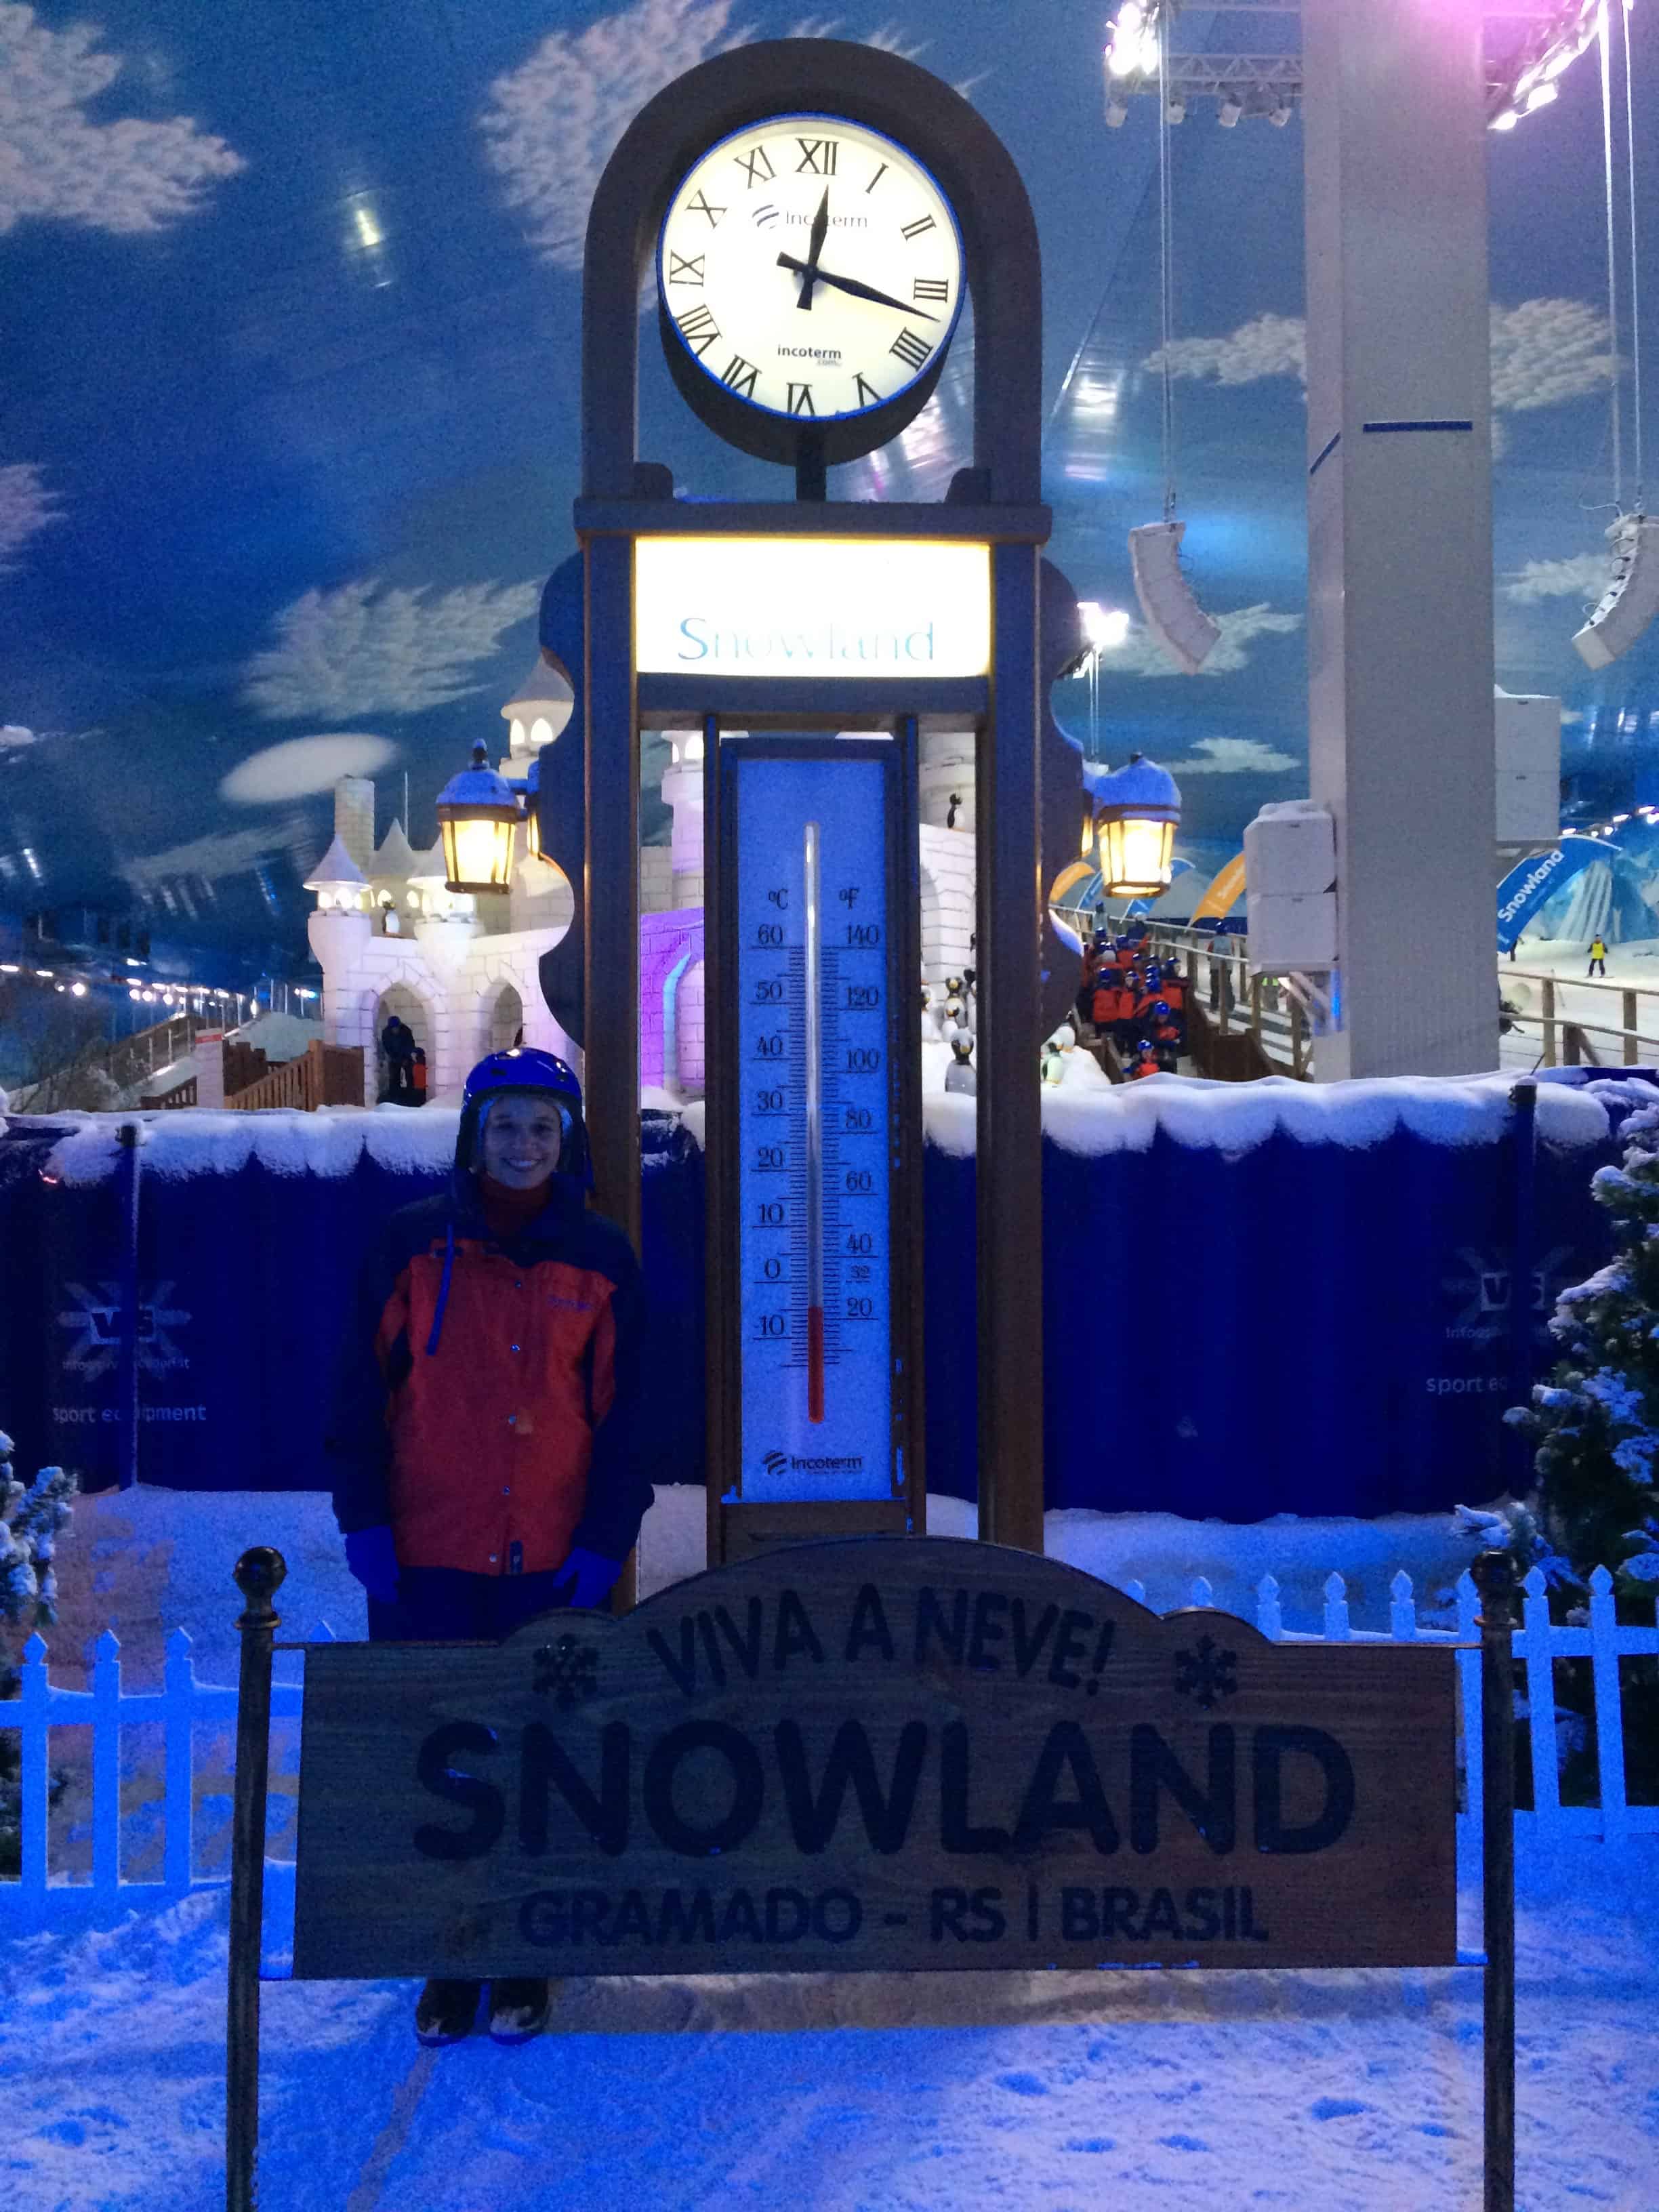 Snowland Viva a Neve!